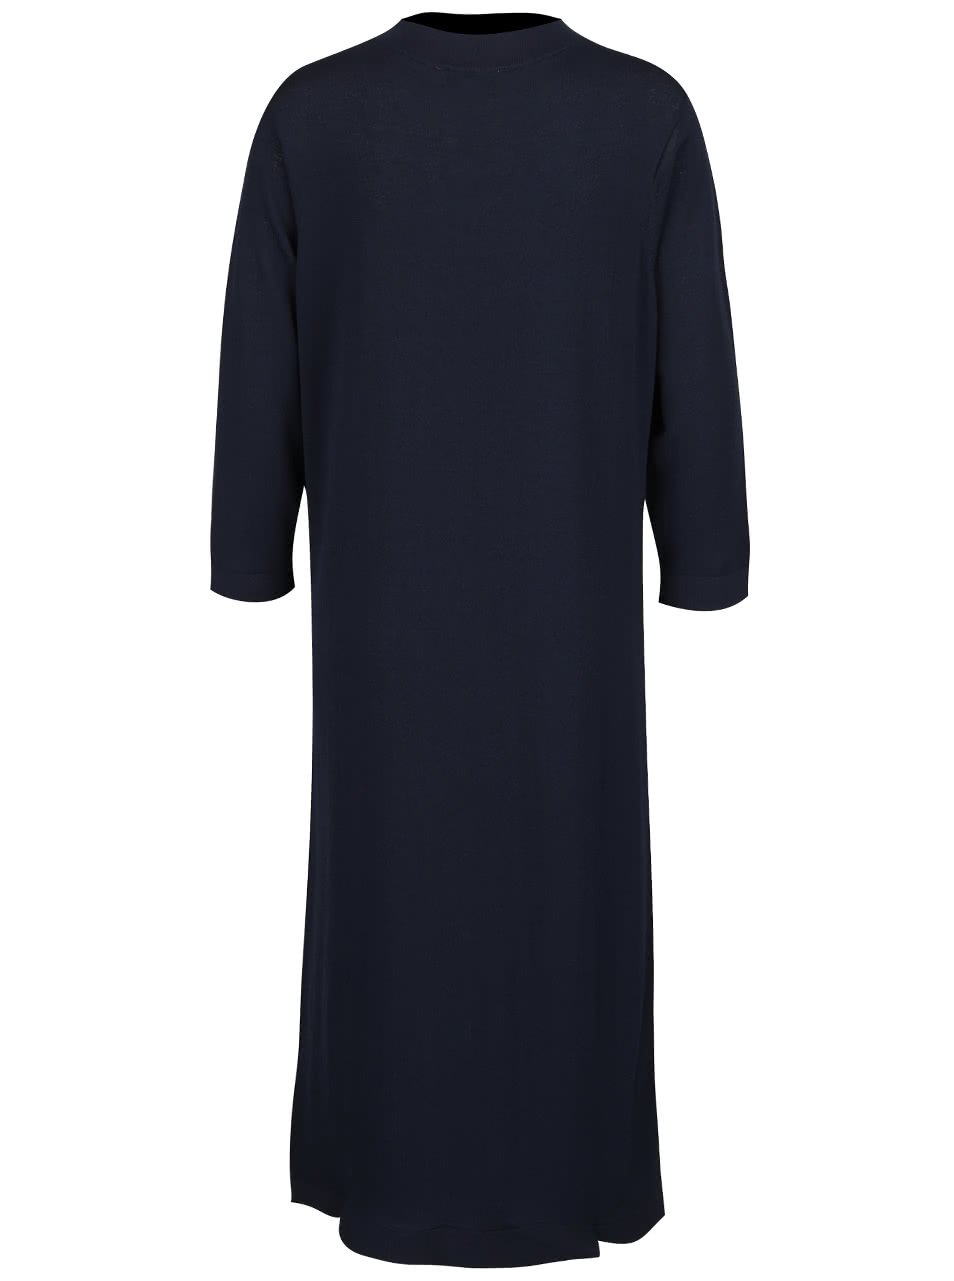 Tmavě modré šaty s 3/4 rukávy Selected Femme Alina